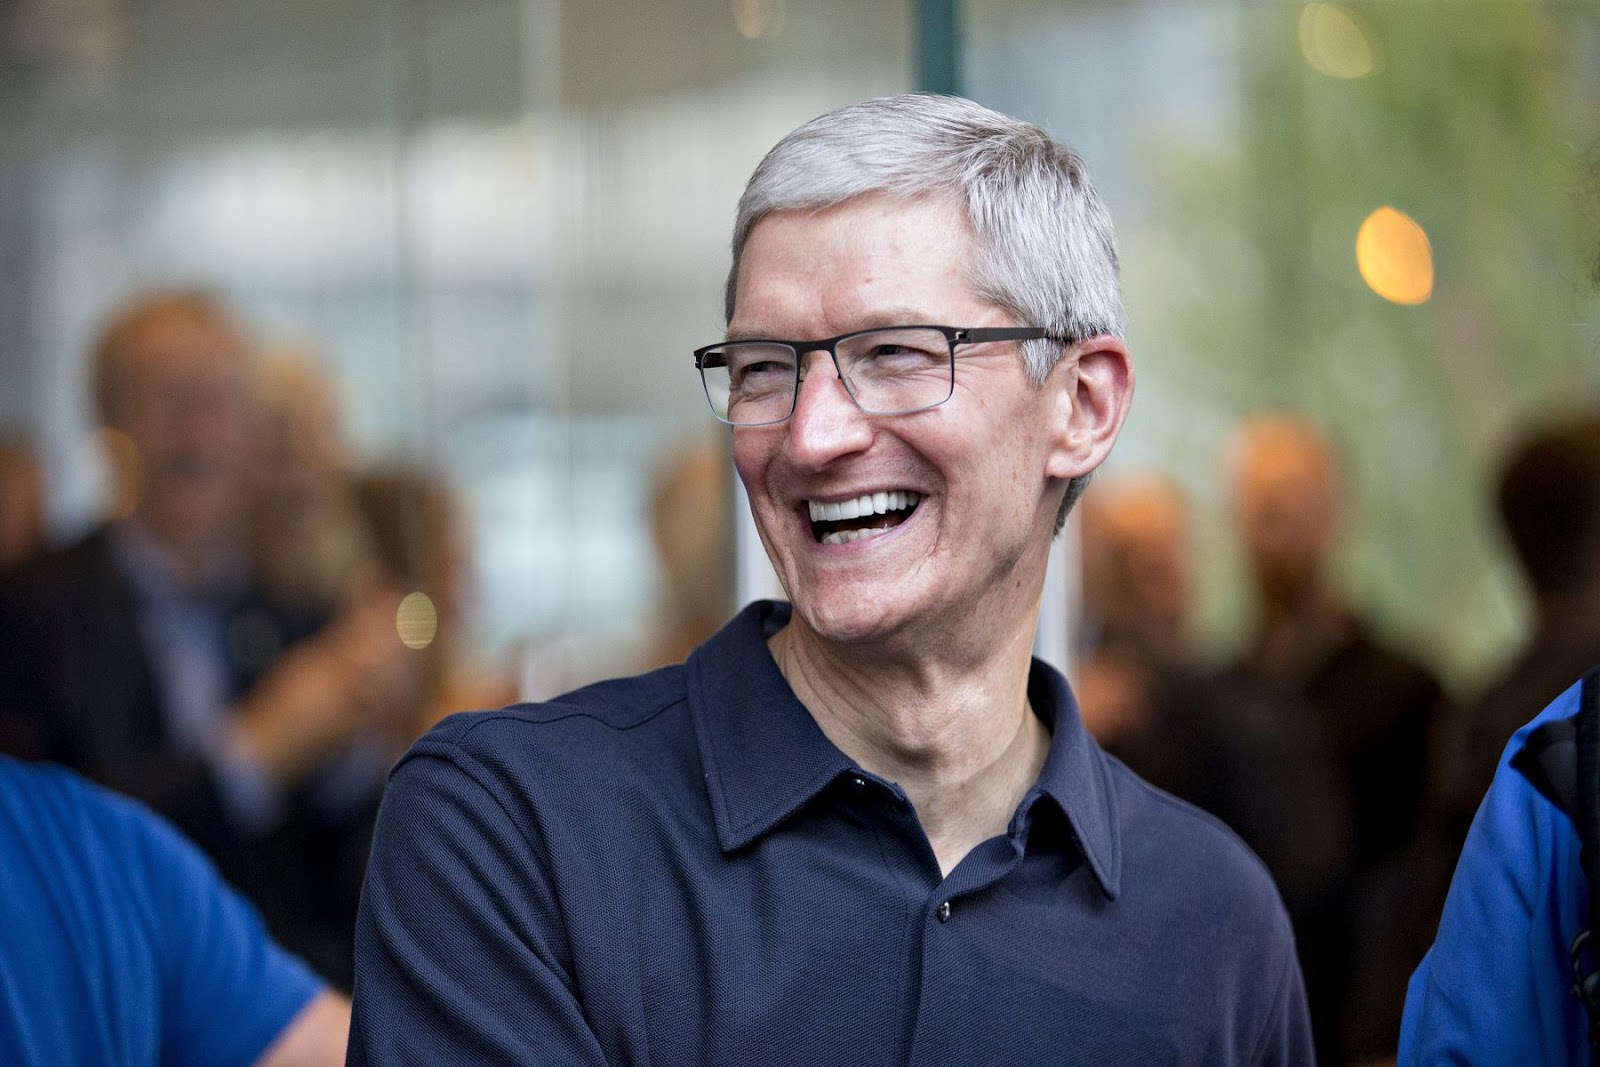 蘋果自研 A 晶片不出售給其他公司！但永遠不會說永遠 | A15, Apple Silicon, iOS 15, macOS | iPhone News 愛瘋了